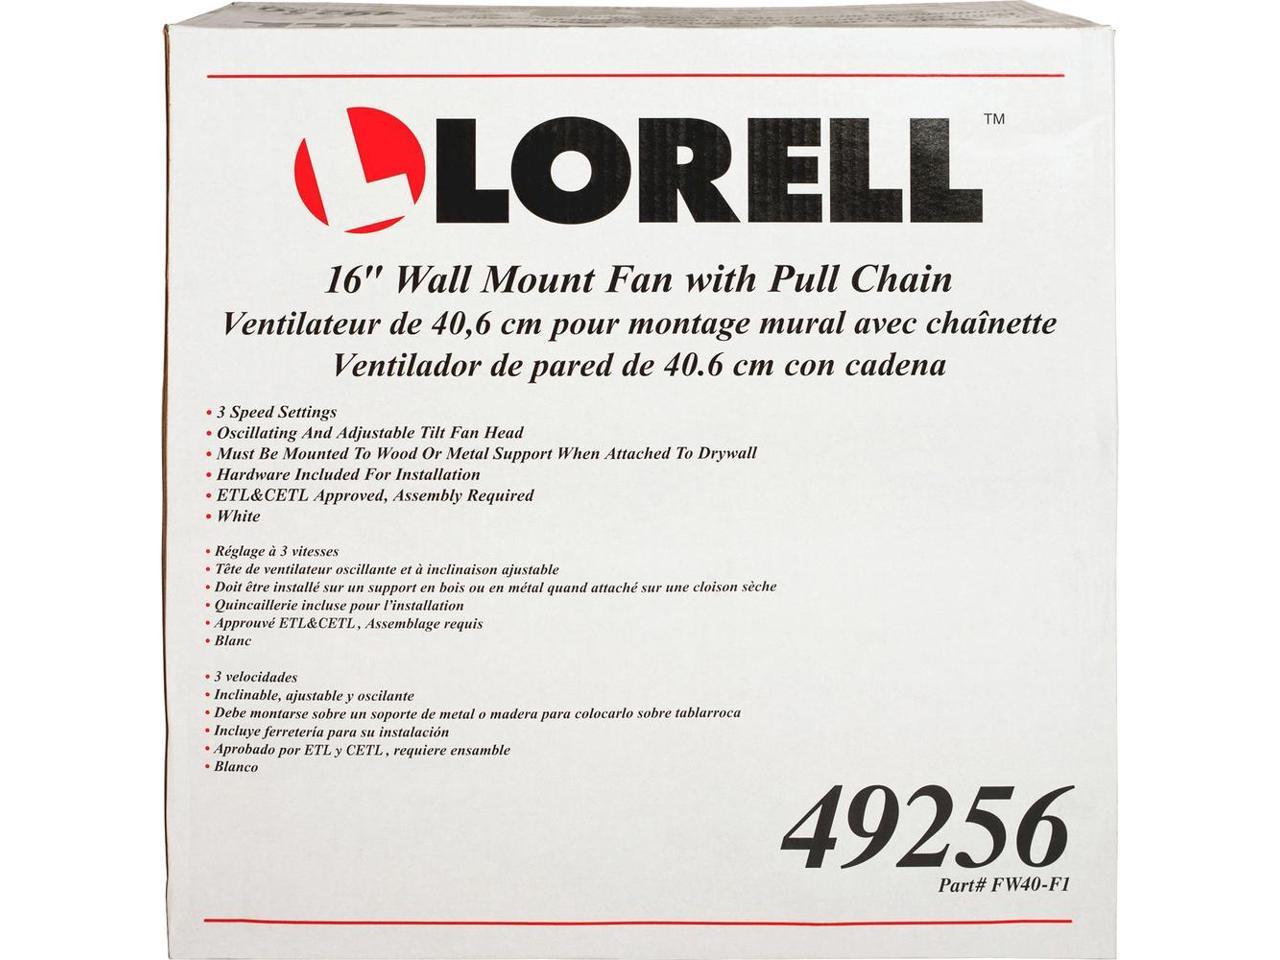 Lorell 16" Wall Mount Fan Pull Chain 9-1/4"x18-1/9"x18-1/2" WE 49256 